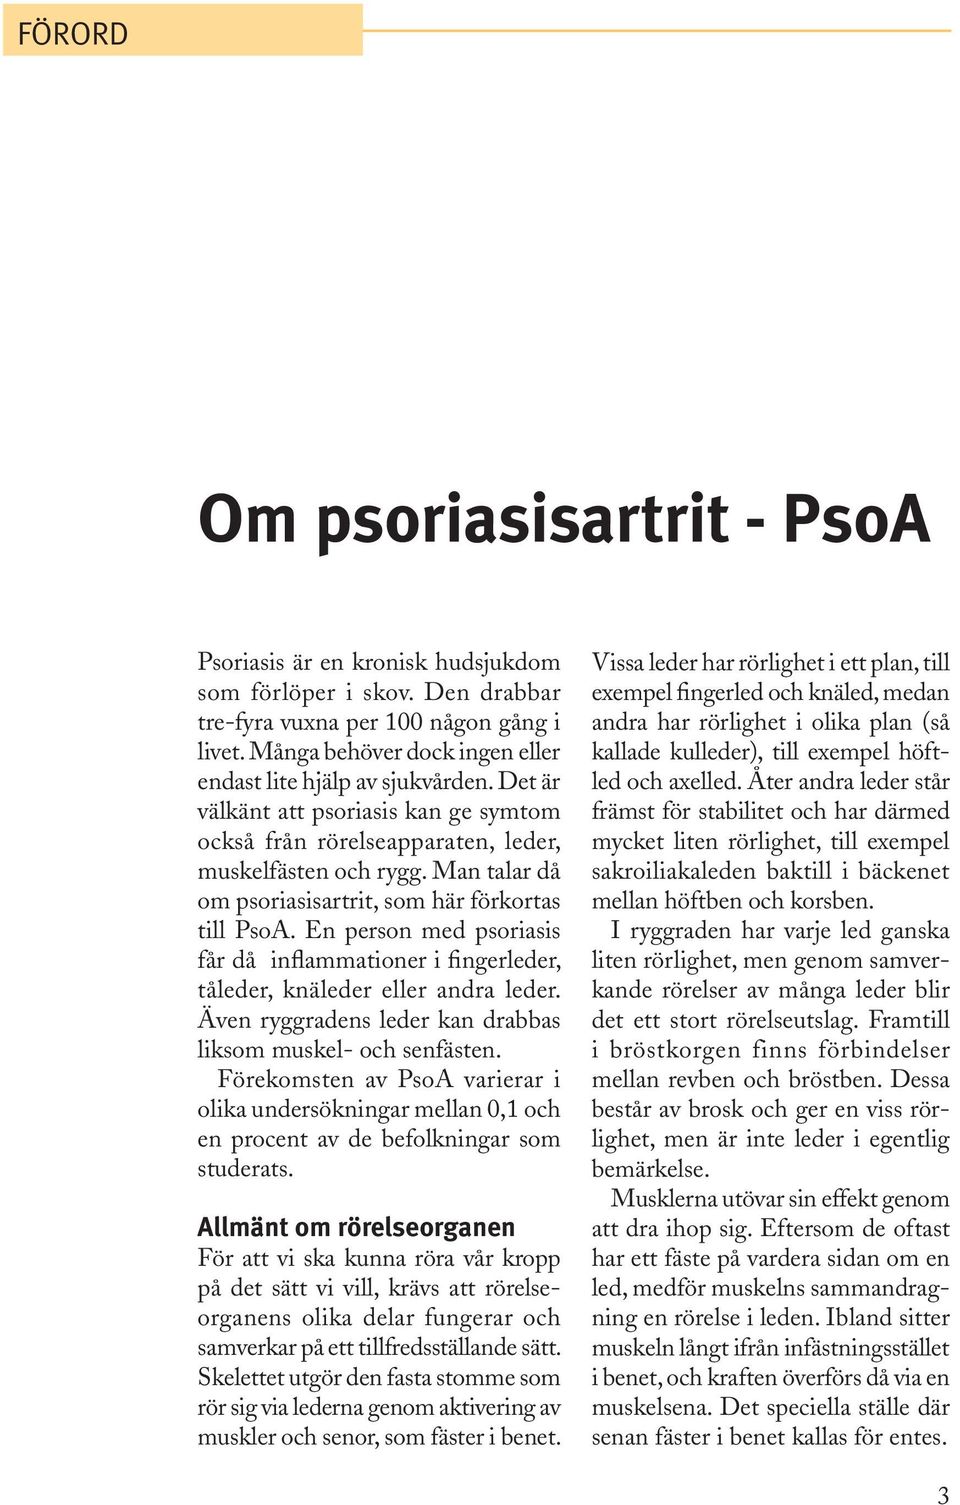 Man talar då om psoriasisartrit, som här förkortas till PsoA. En person med psoriasis får då inflammationer i fingerleder, tåleder, knäleder eller andra leder.